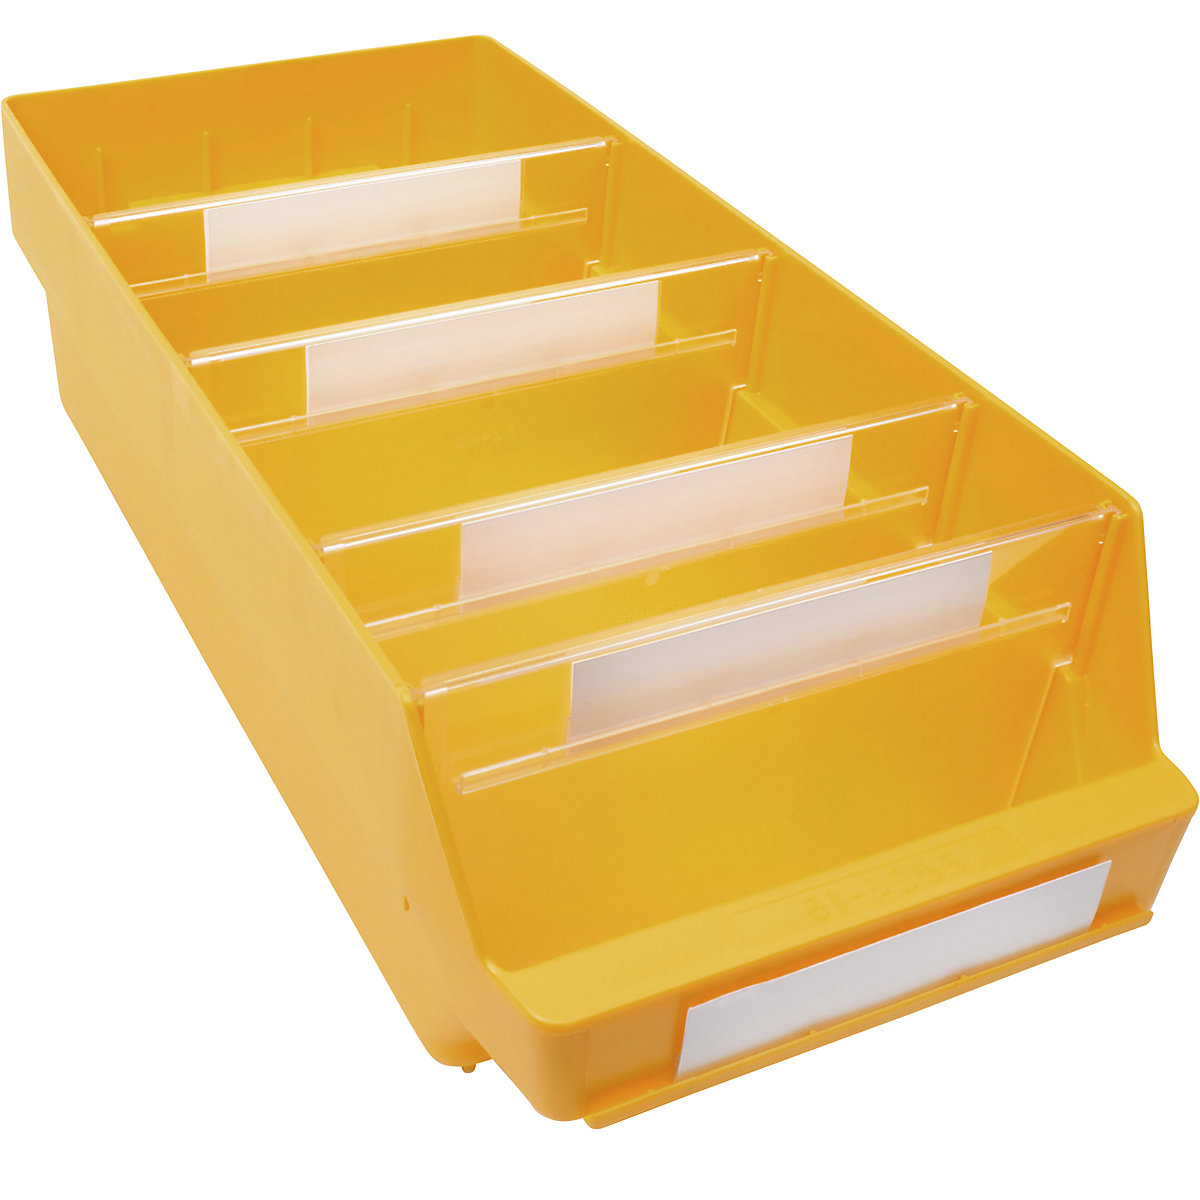 Bac de stockage en polypropylène résistant aux chocs – STEMO, coloris jaune, L x l x h 500 x 240 x 150 mm, lot de 10-6